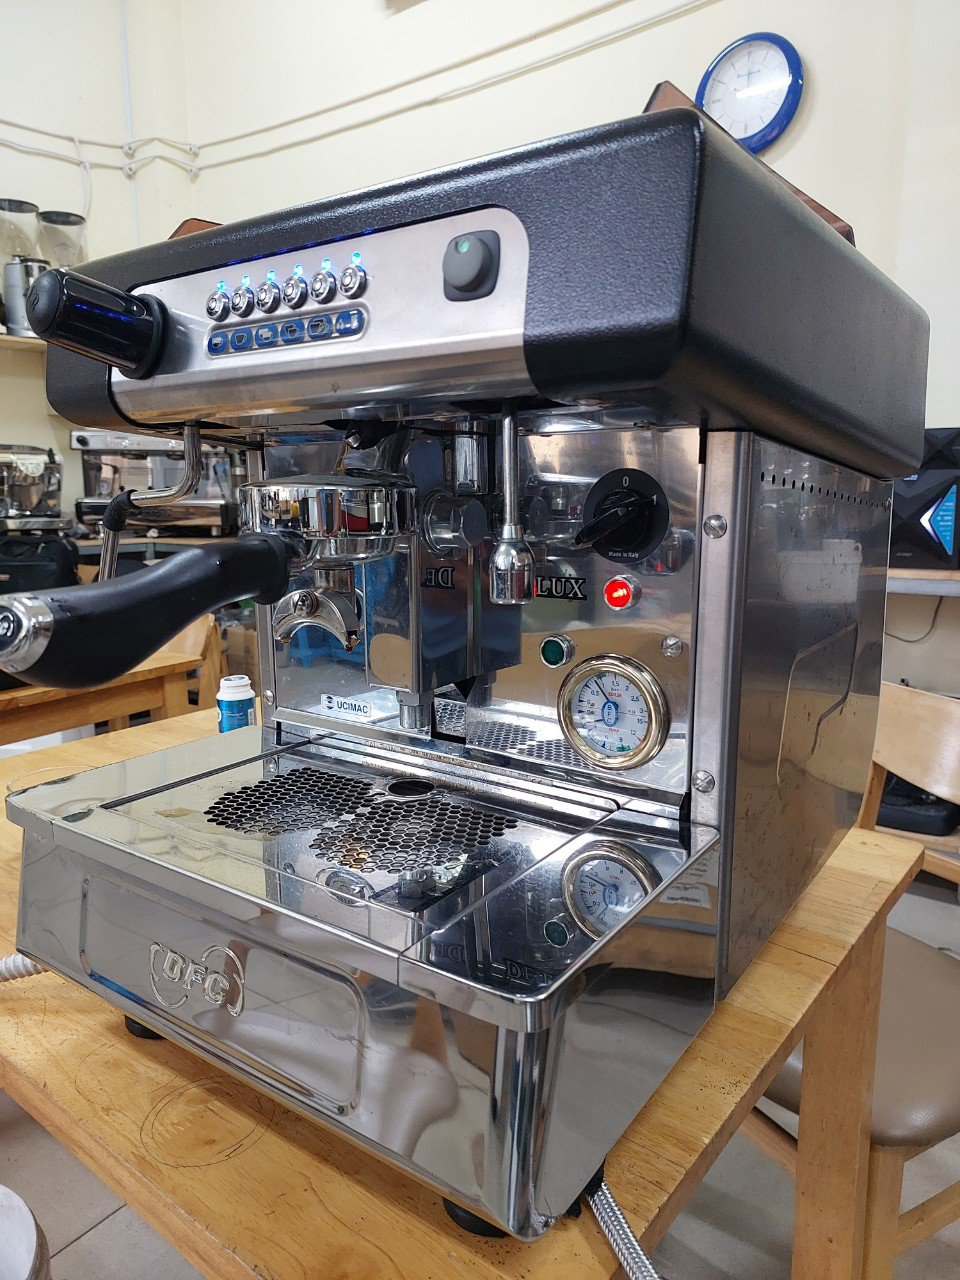 Cần bán máy pha cafe chuyên nghiệp cũ BFC Delux nhập khẩu Ý chất lượng bền có tiếng.